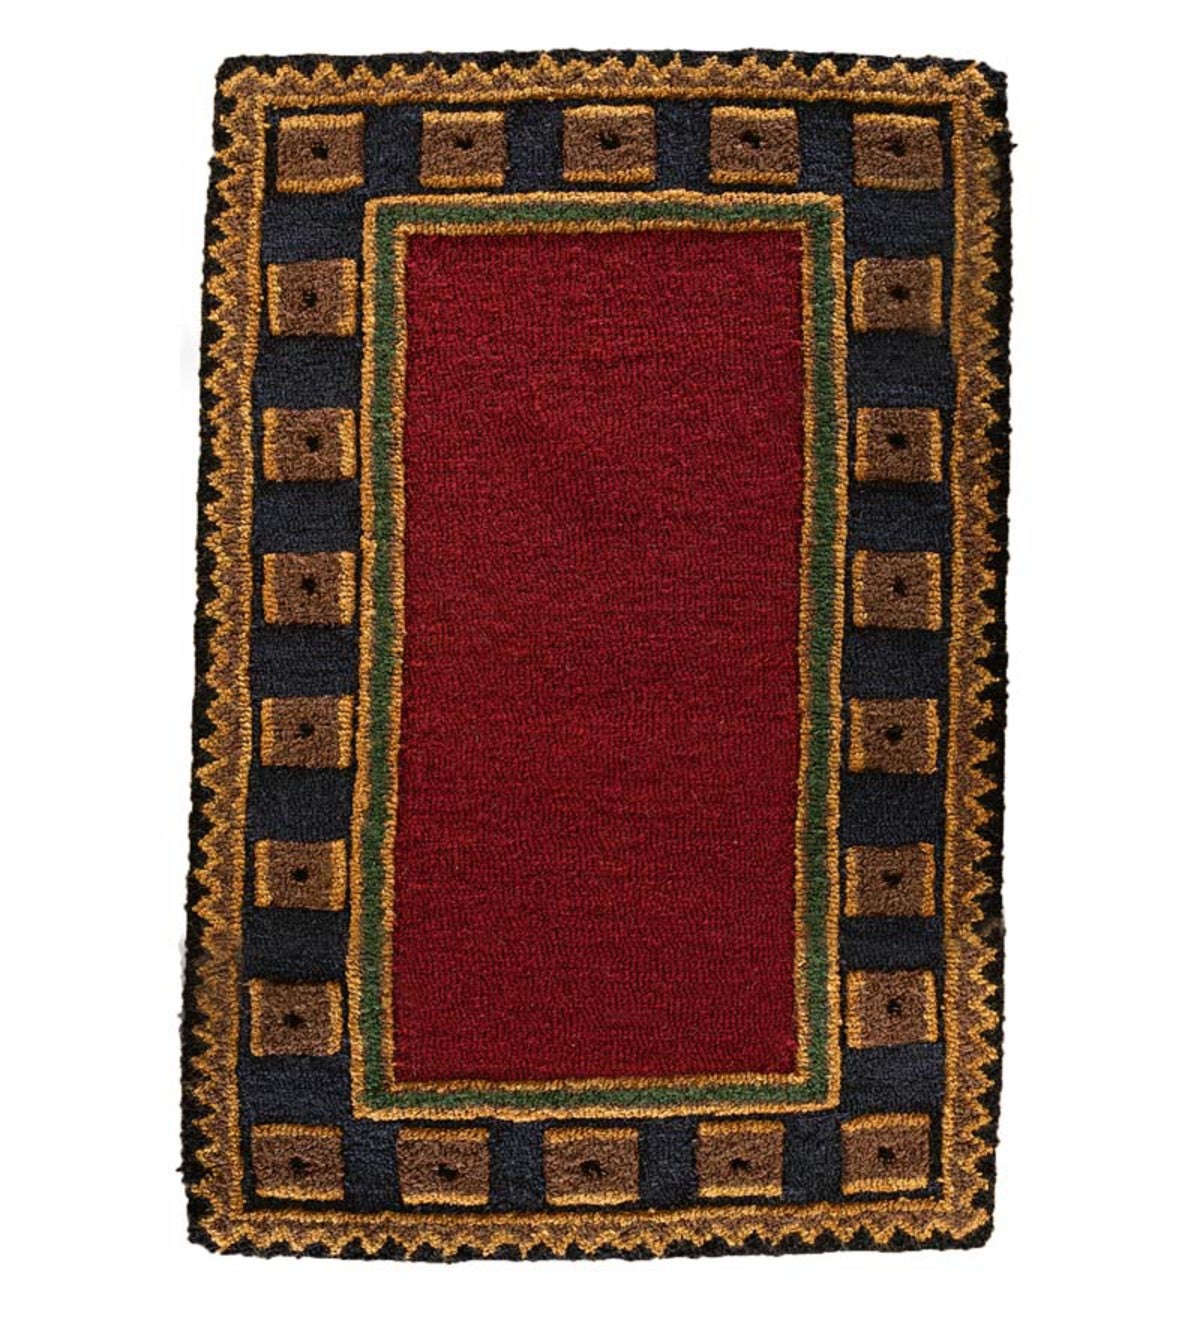 Riverwood Wool Rug, 5' x 8' - Red